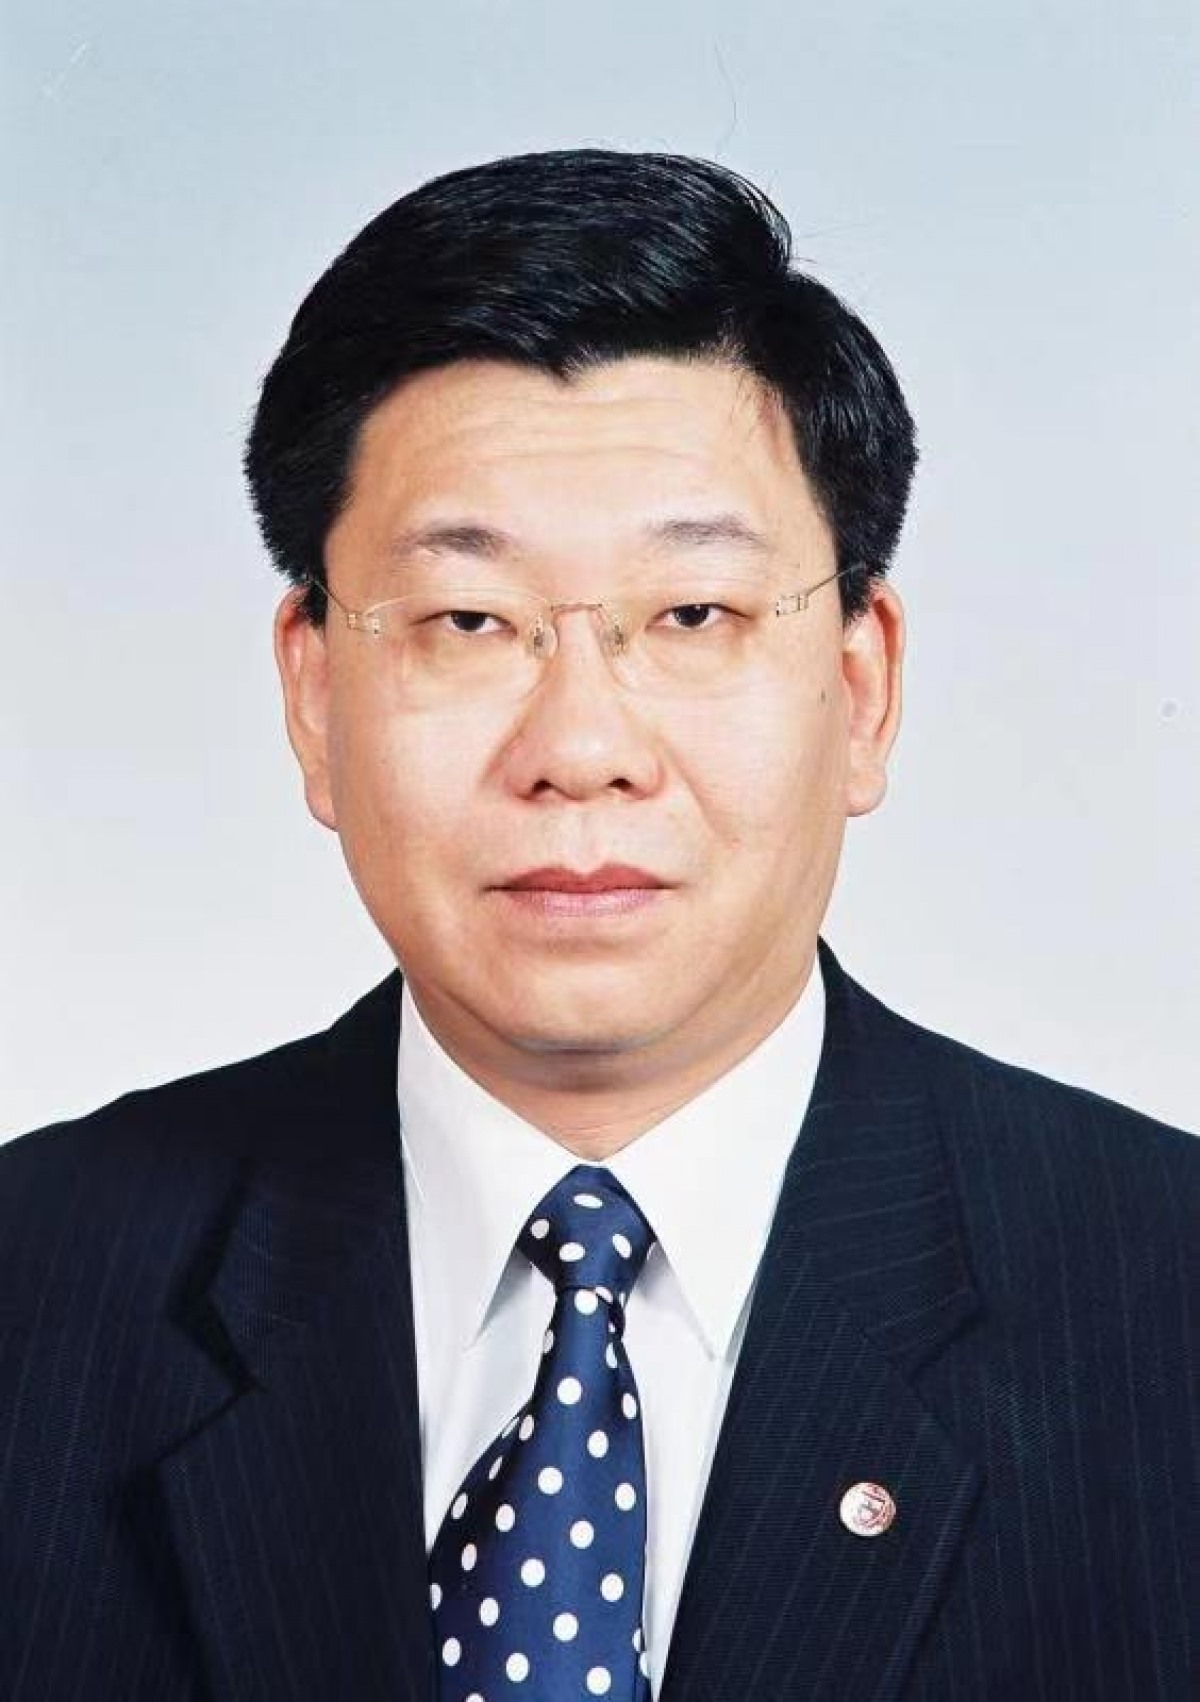 Ông Hàn Phương Minh, Phó Chủ nhiệm Ủy ban Đối ngoại Chính hiệp toàn quốc Trung Quốc. Ảnh: nhân vật cung cấp.